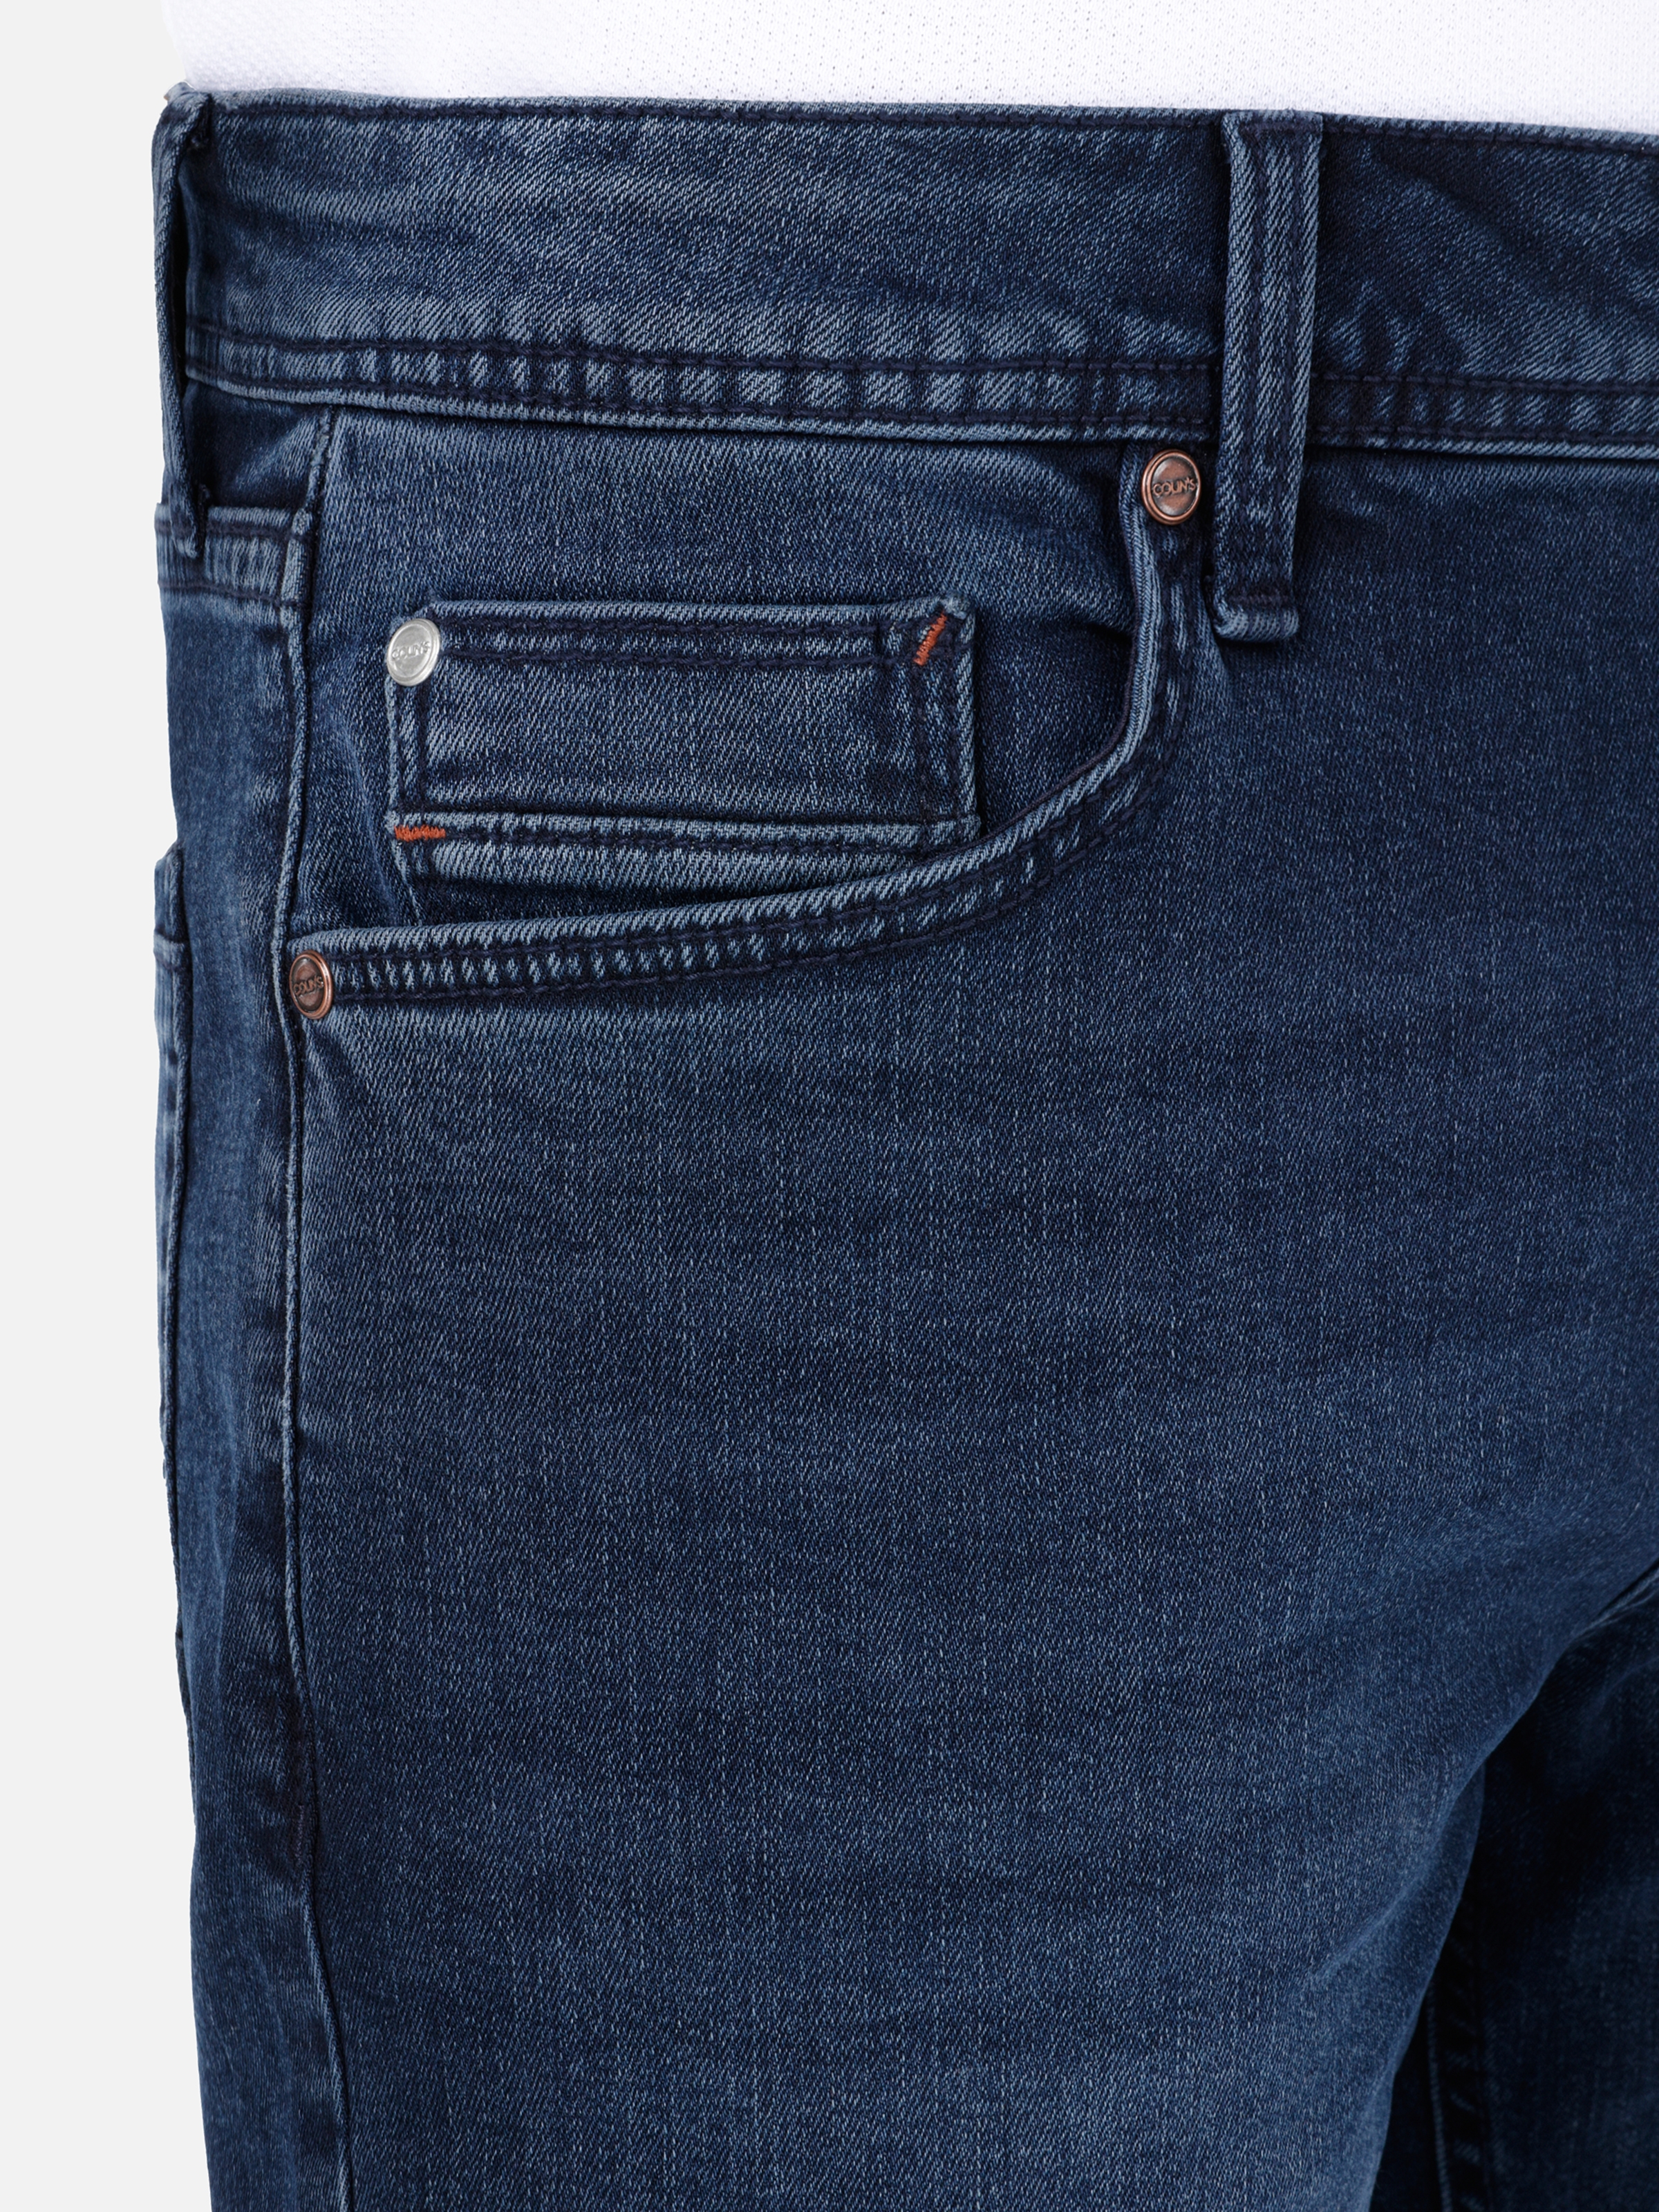 Afișați detalii pentru Short / Pantaloni Scurti De Barbati Denim   